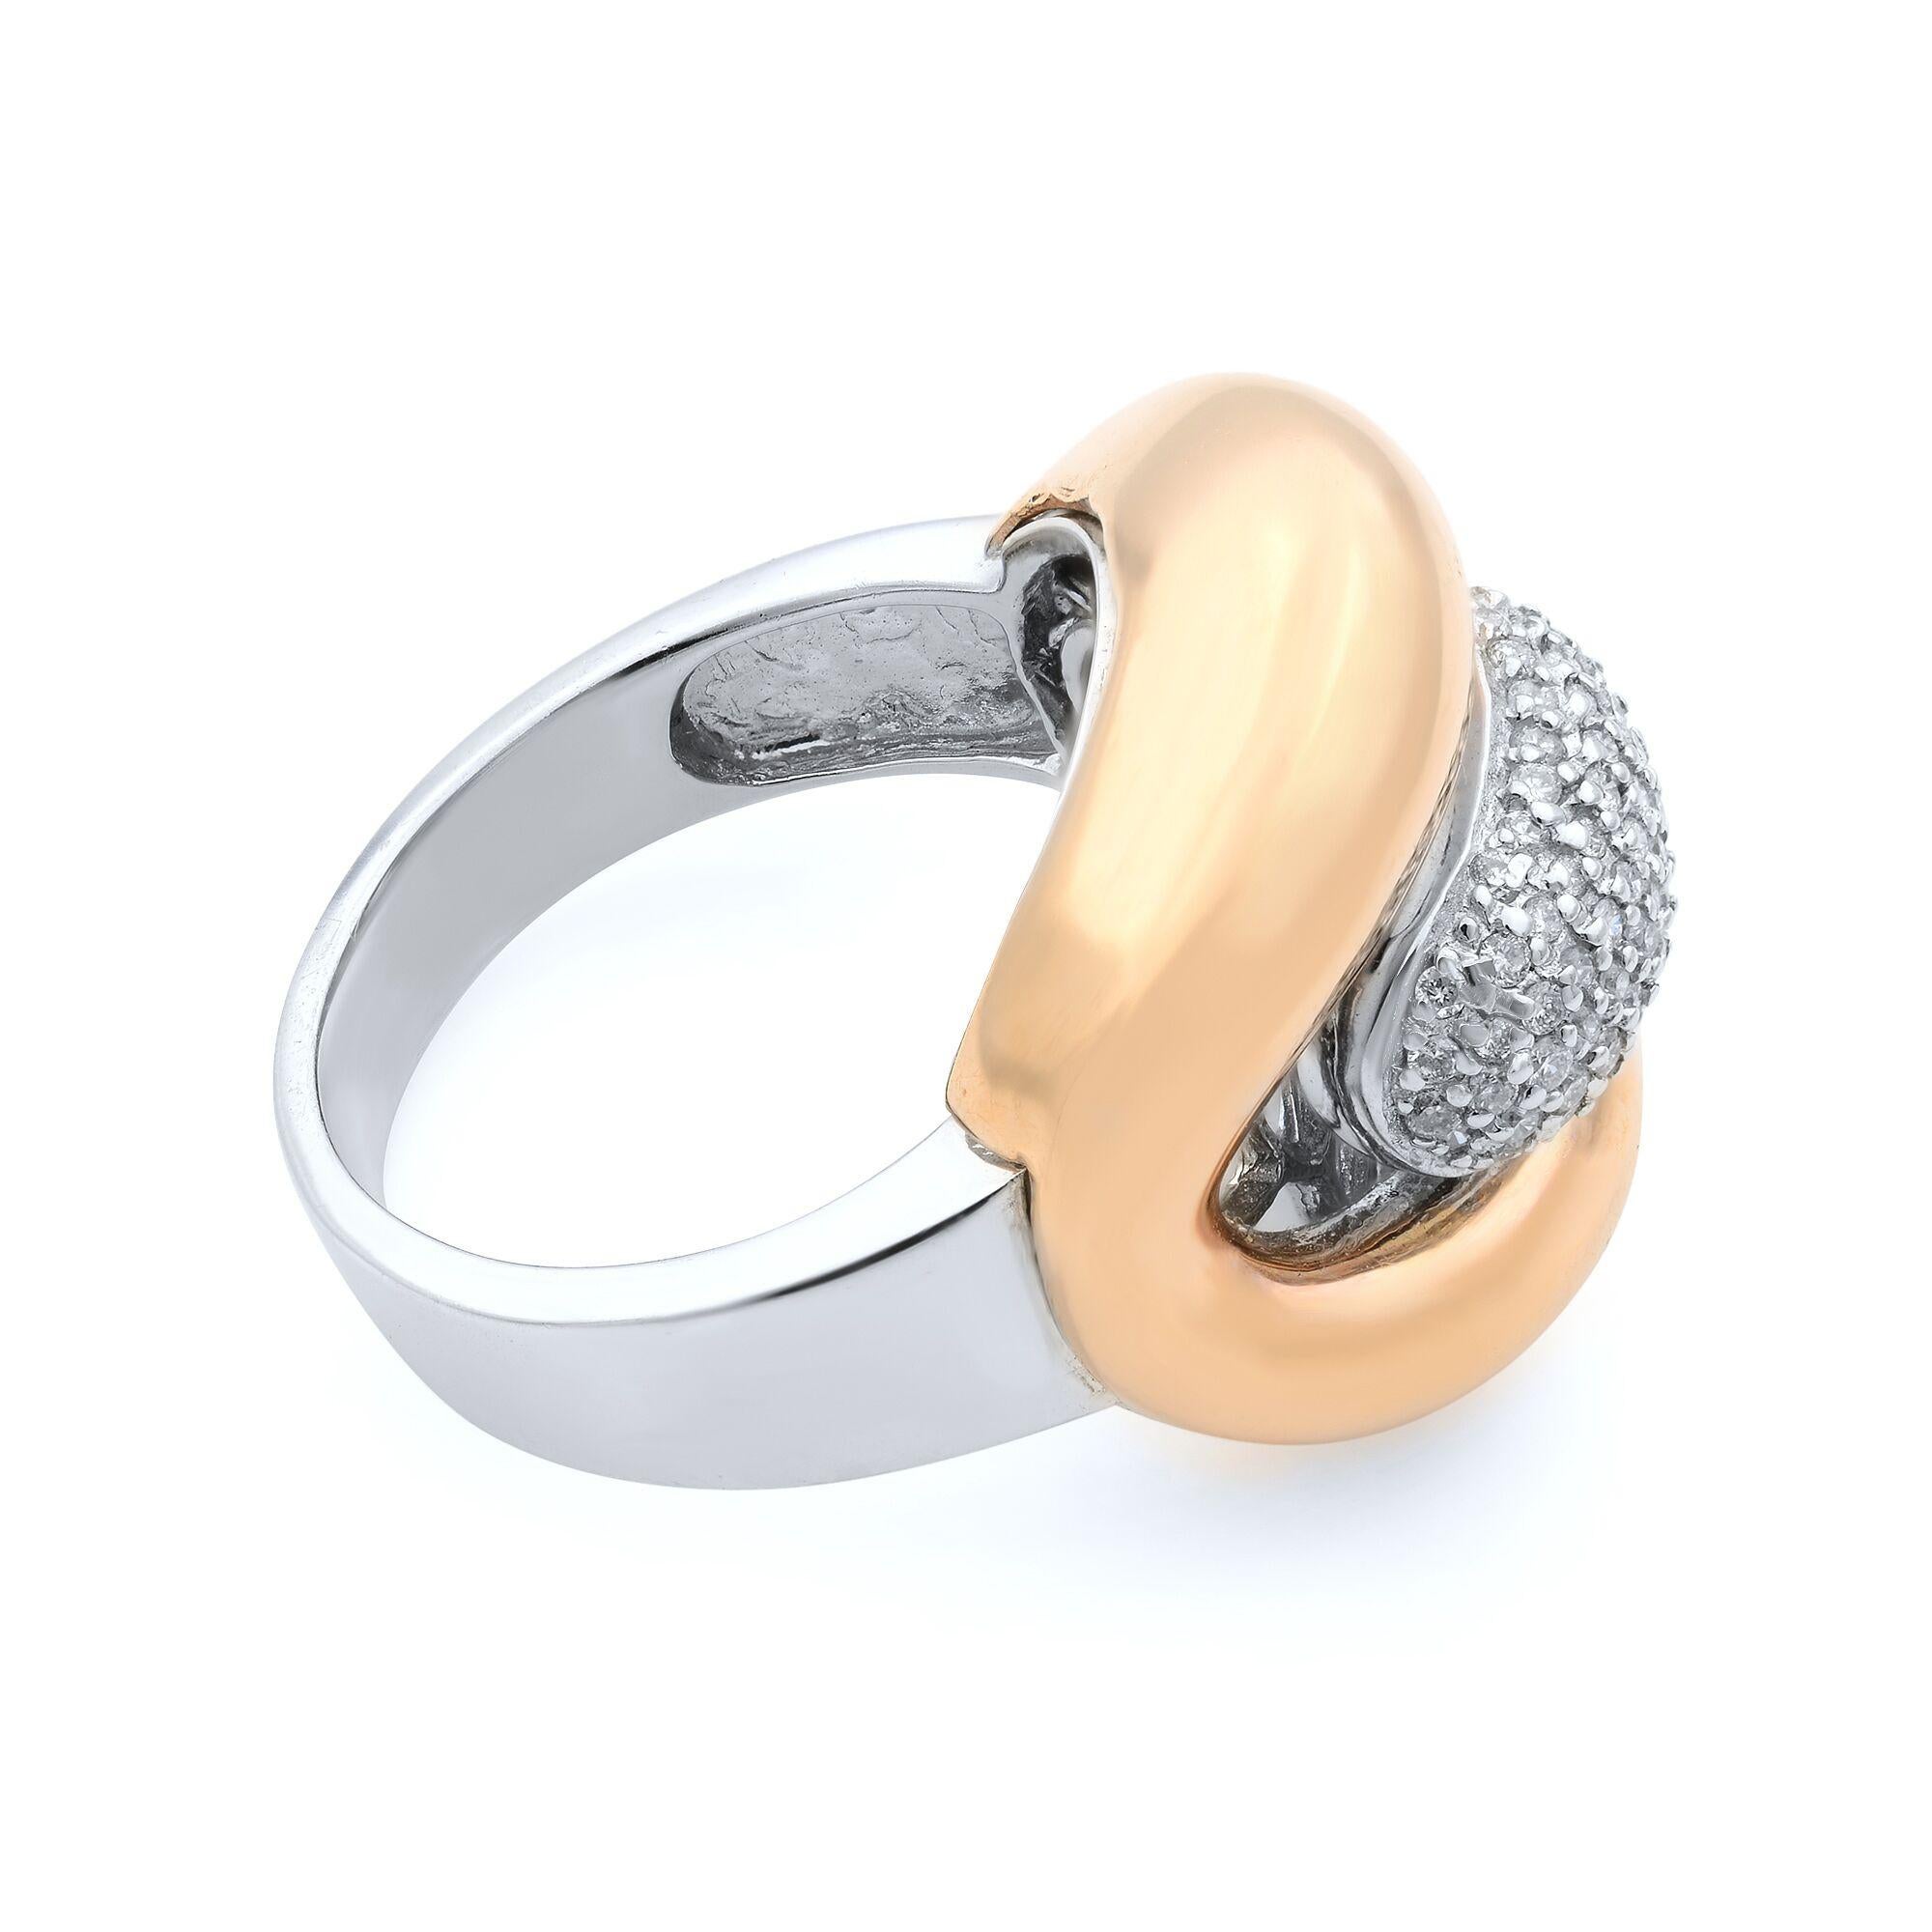 Modern Rachel Koen Diamond Fashion Ring 14K White and Rose Gold 0.35Cttw For Sale